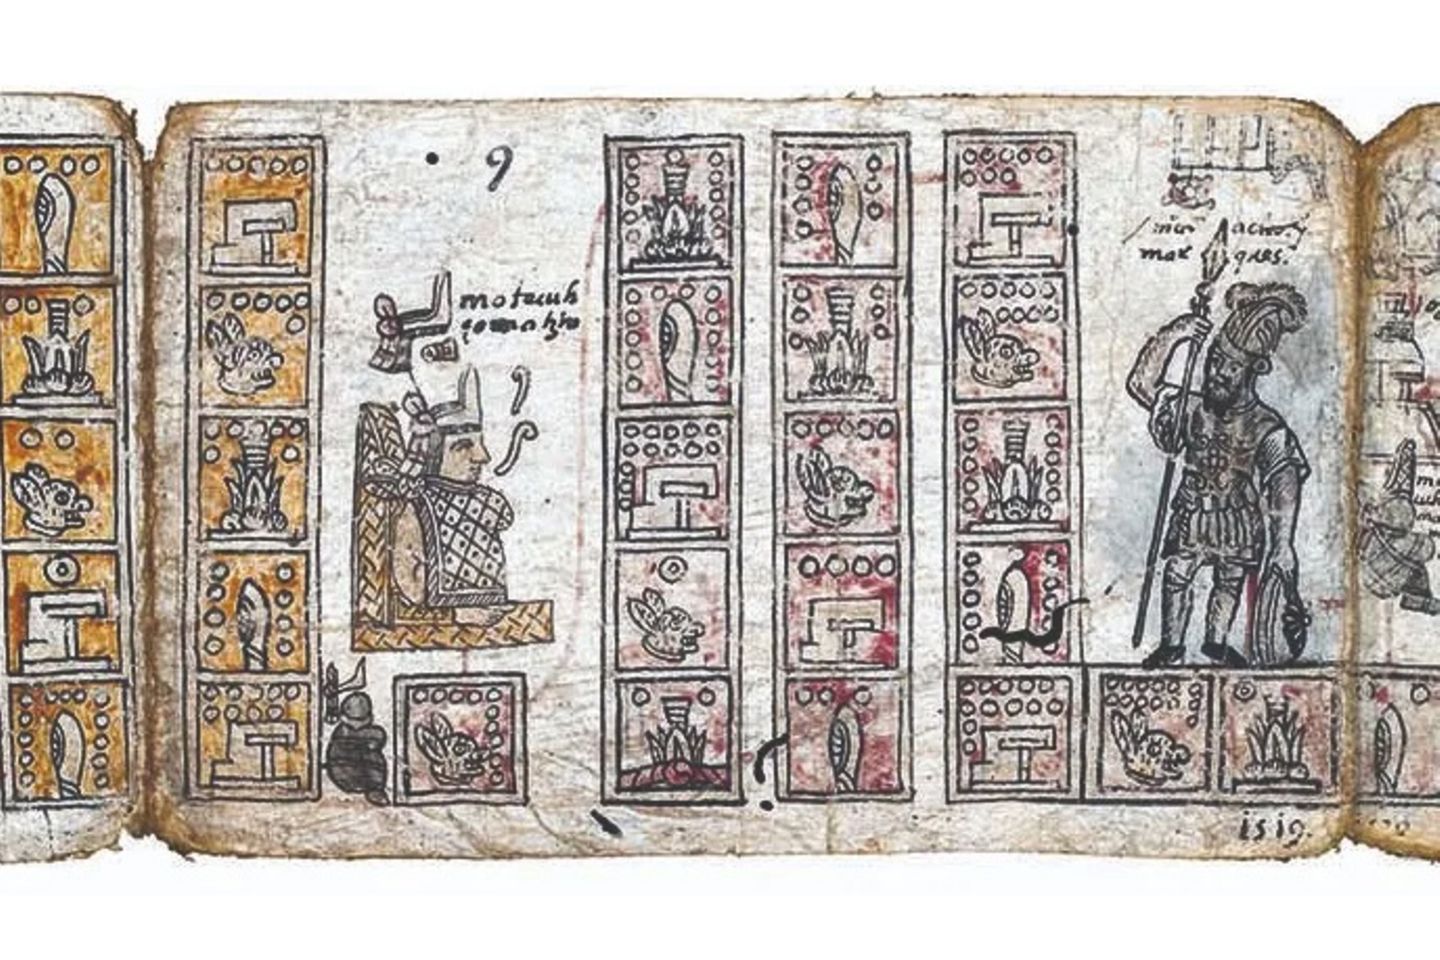 Los códigos aztecas describen el ascenso y la caída de Tenochtitlán